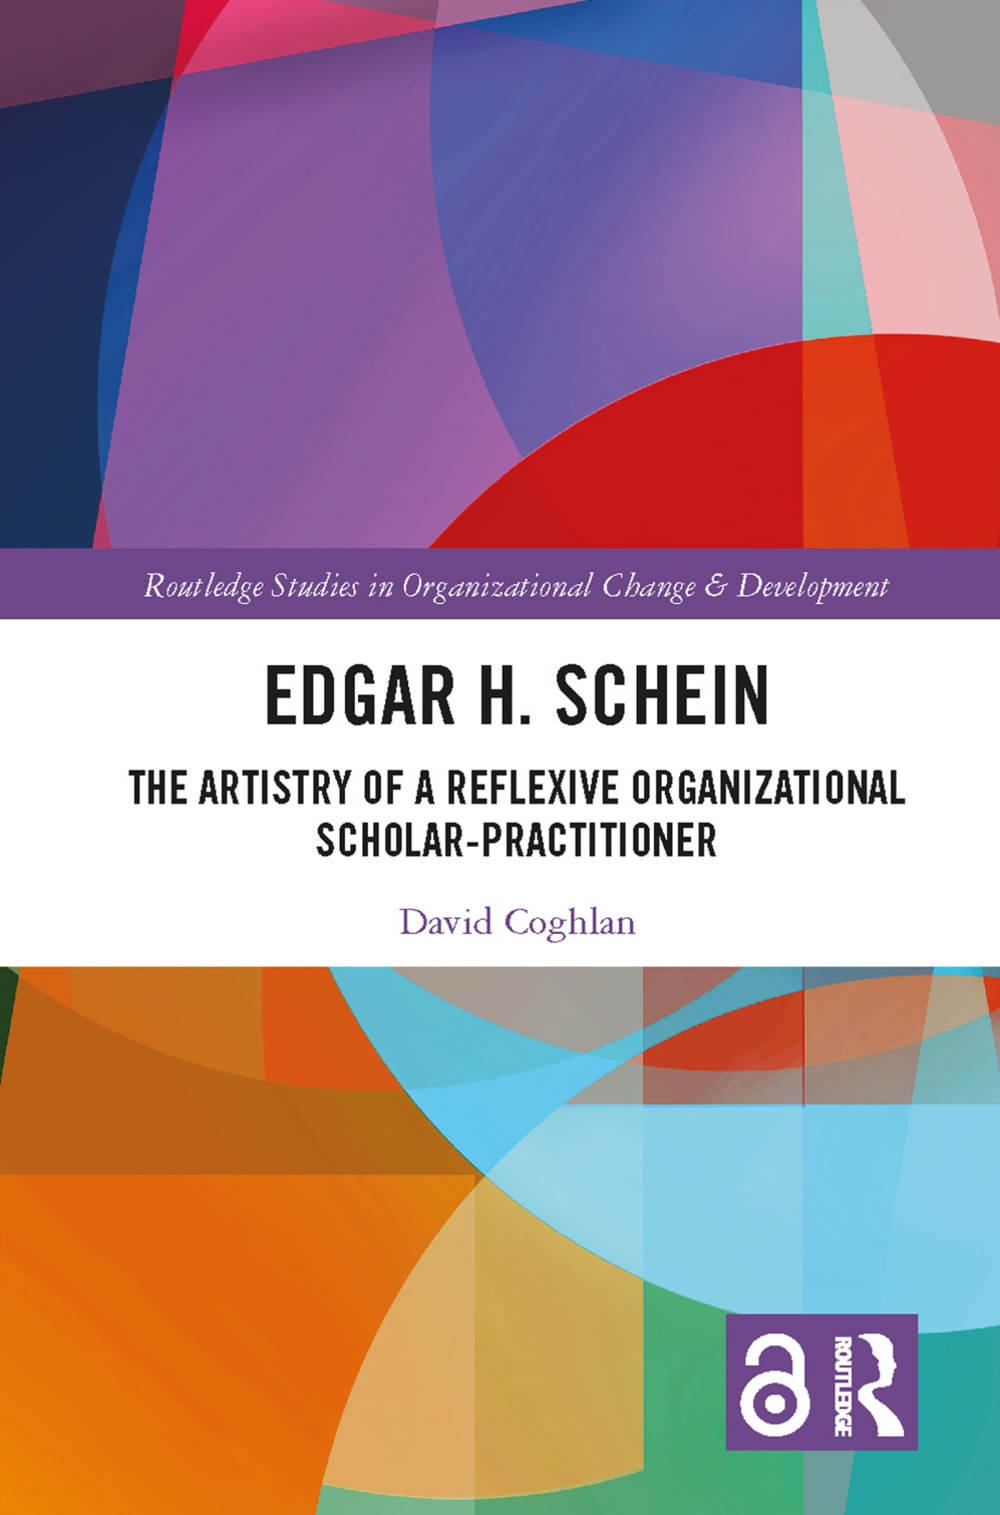 Edgar H. Schein: The Artistry of a Reflexive Organizational Scholar-Practitioner